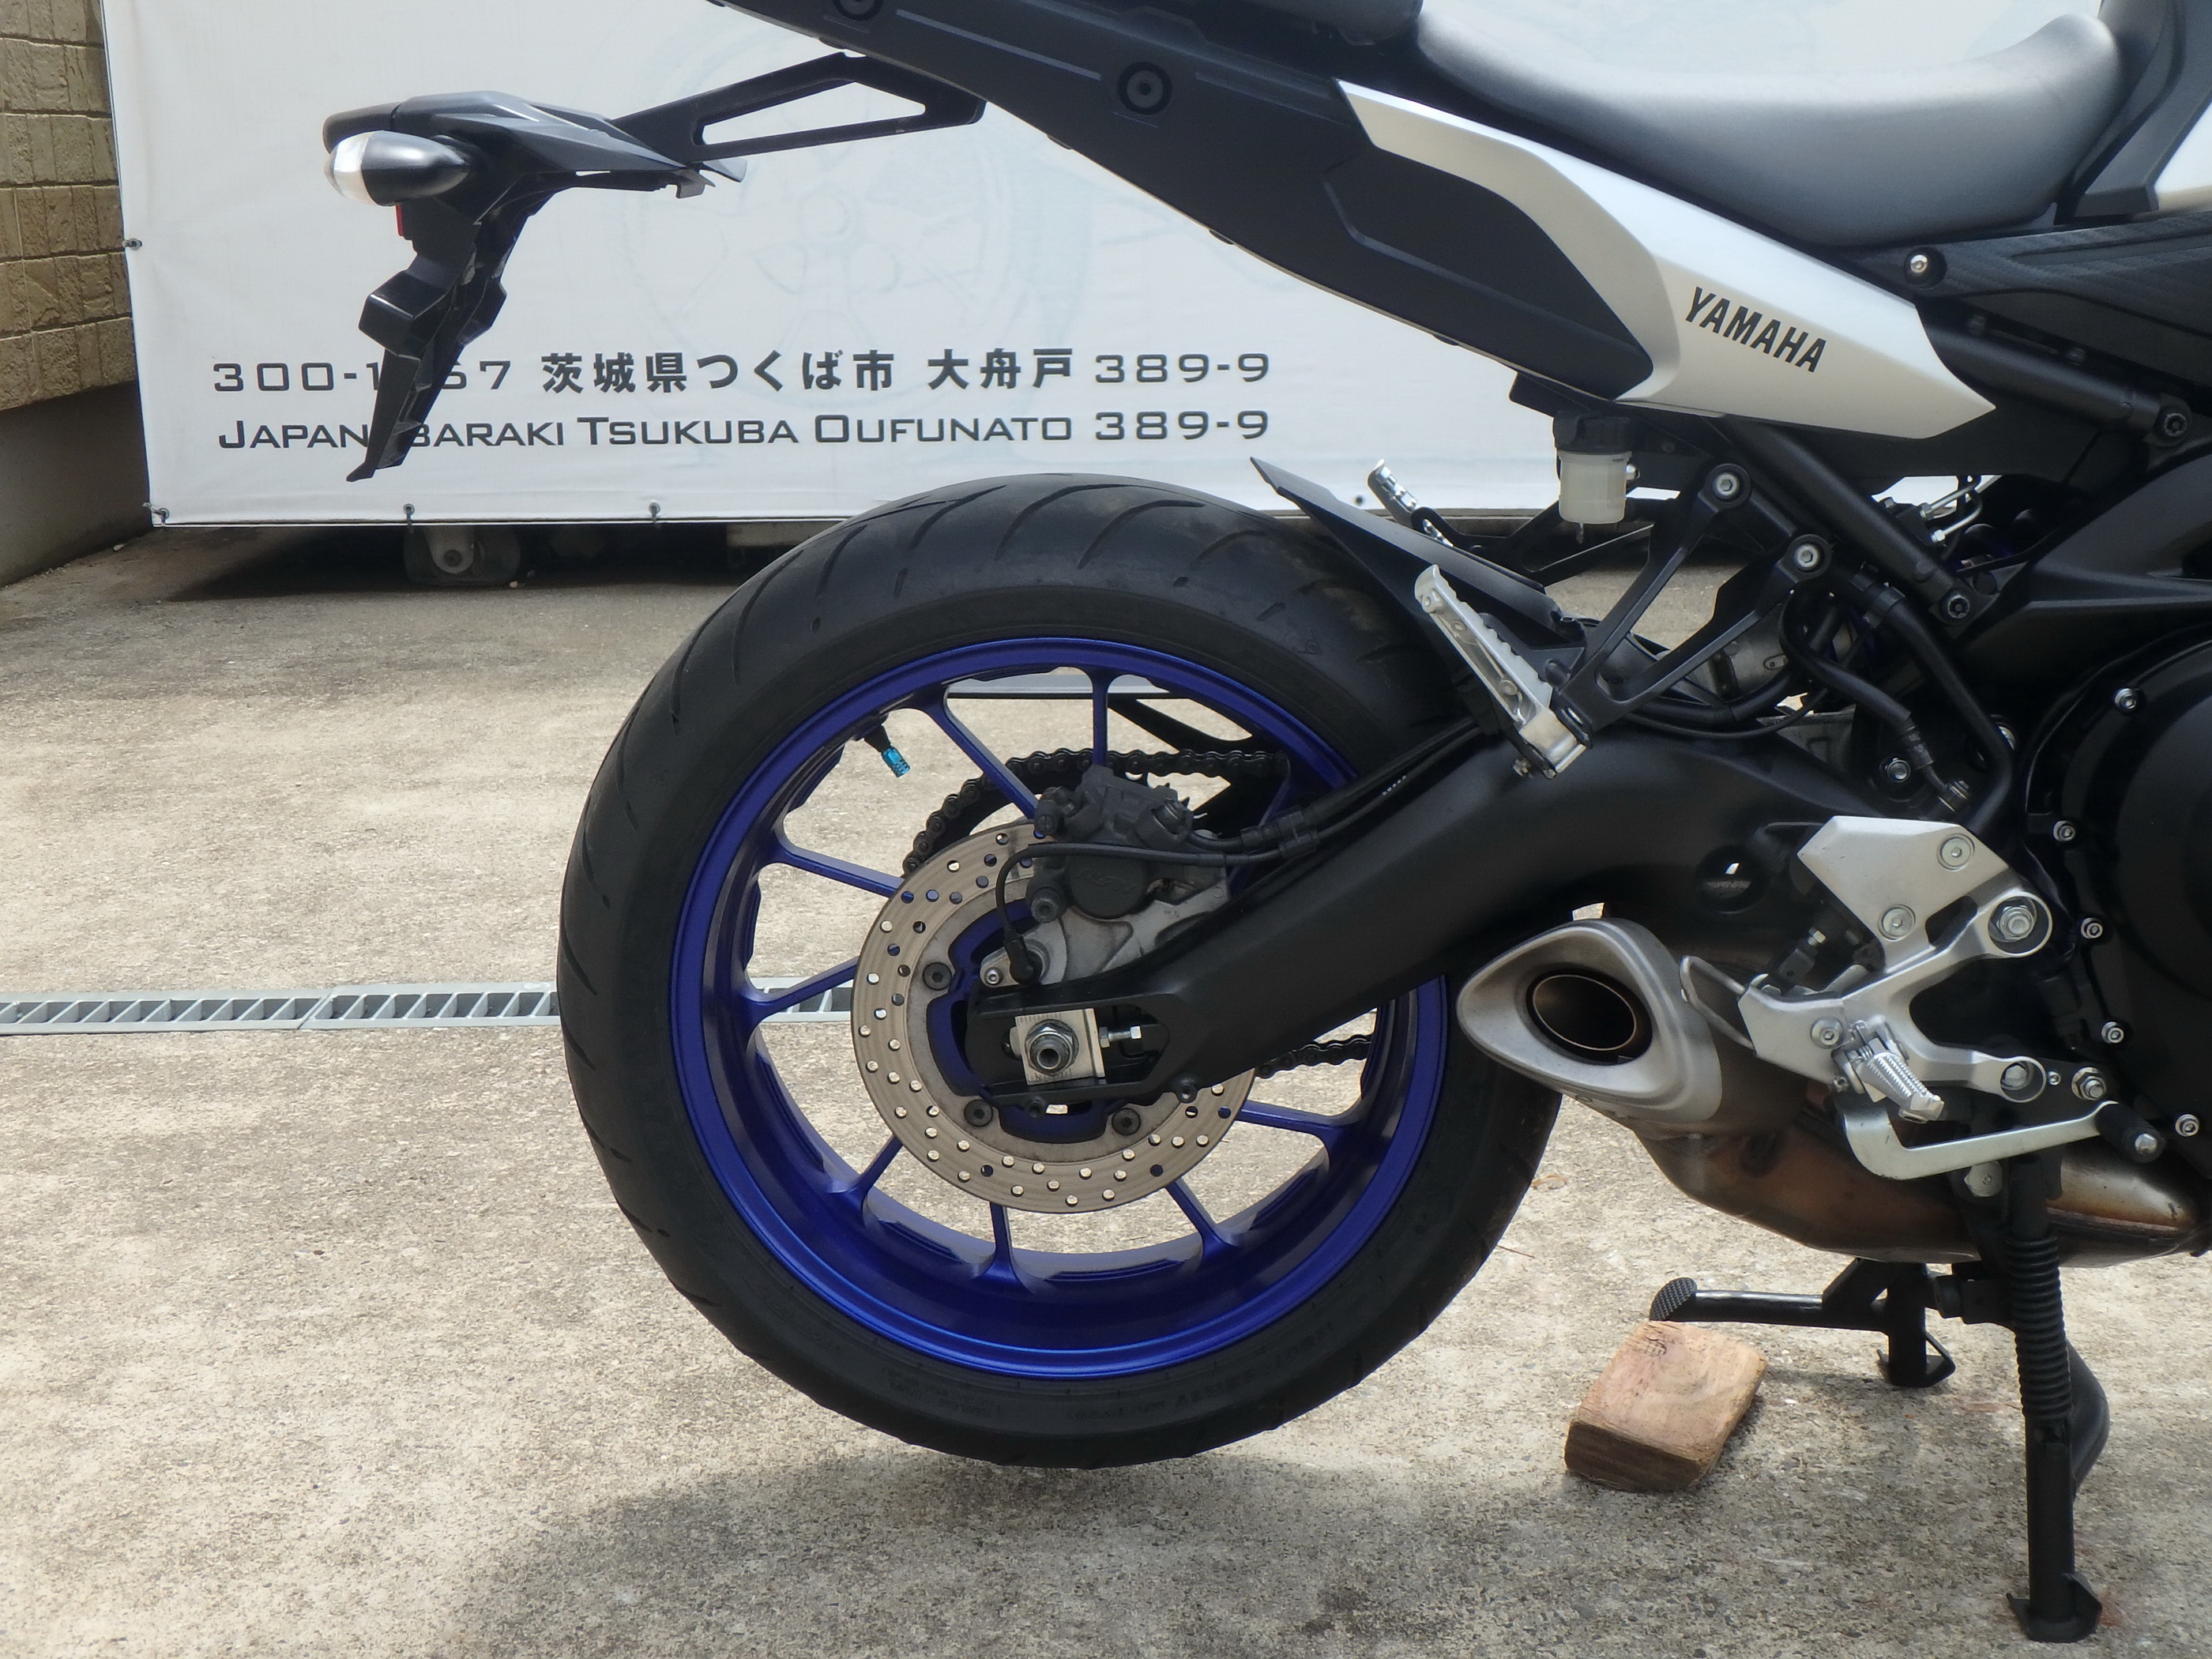 Купить мотоцикл Yamaha MT-09 Tracer FJ-09 2015 фото 17